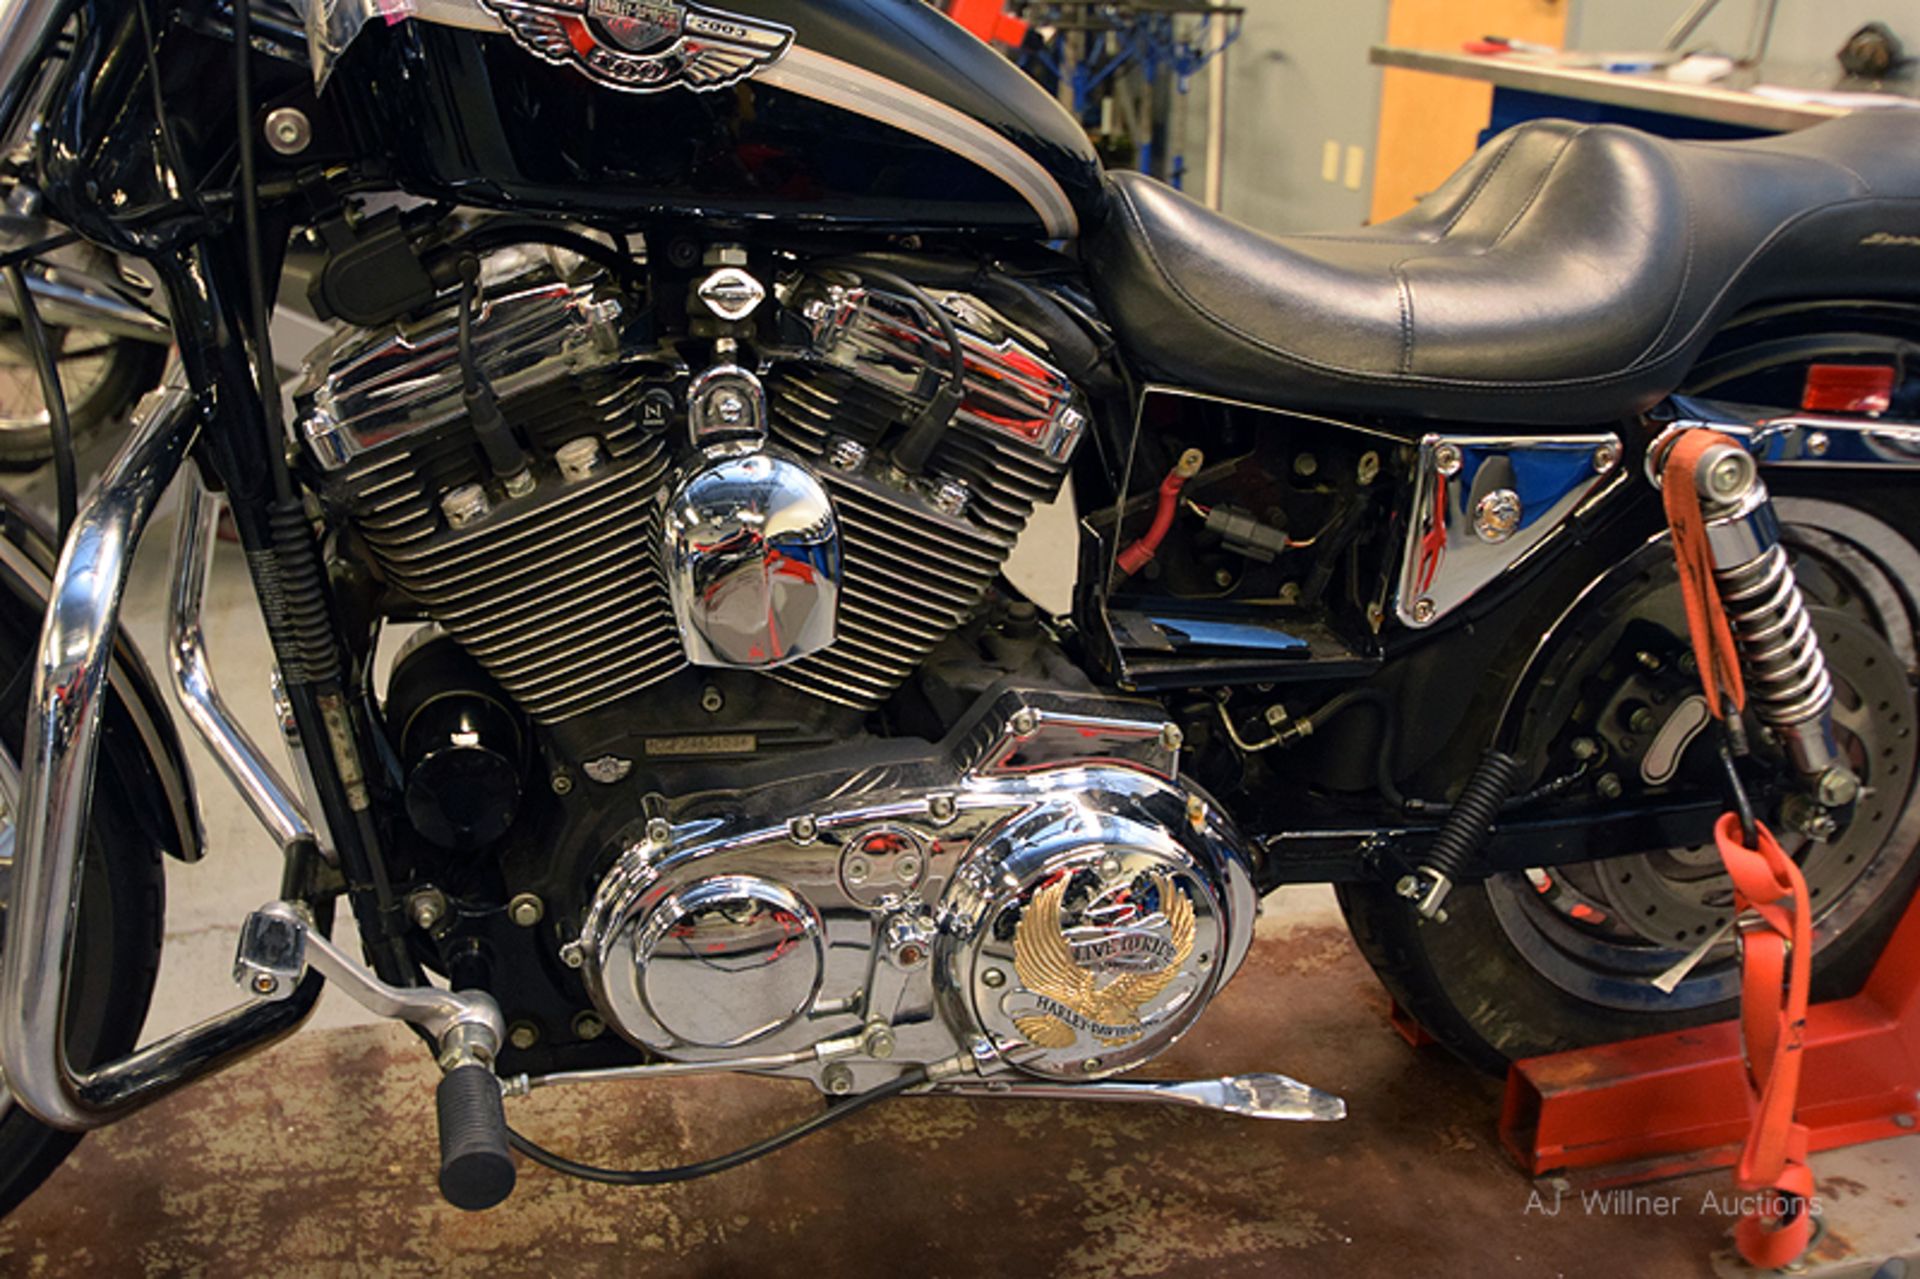 2003 Harley Davidson SPORTSTER XL 1200 - Image 2 of 5